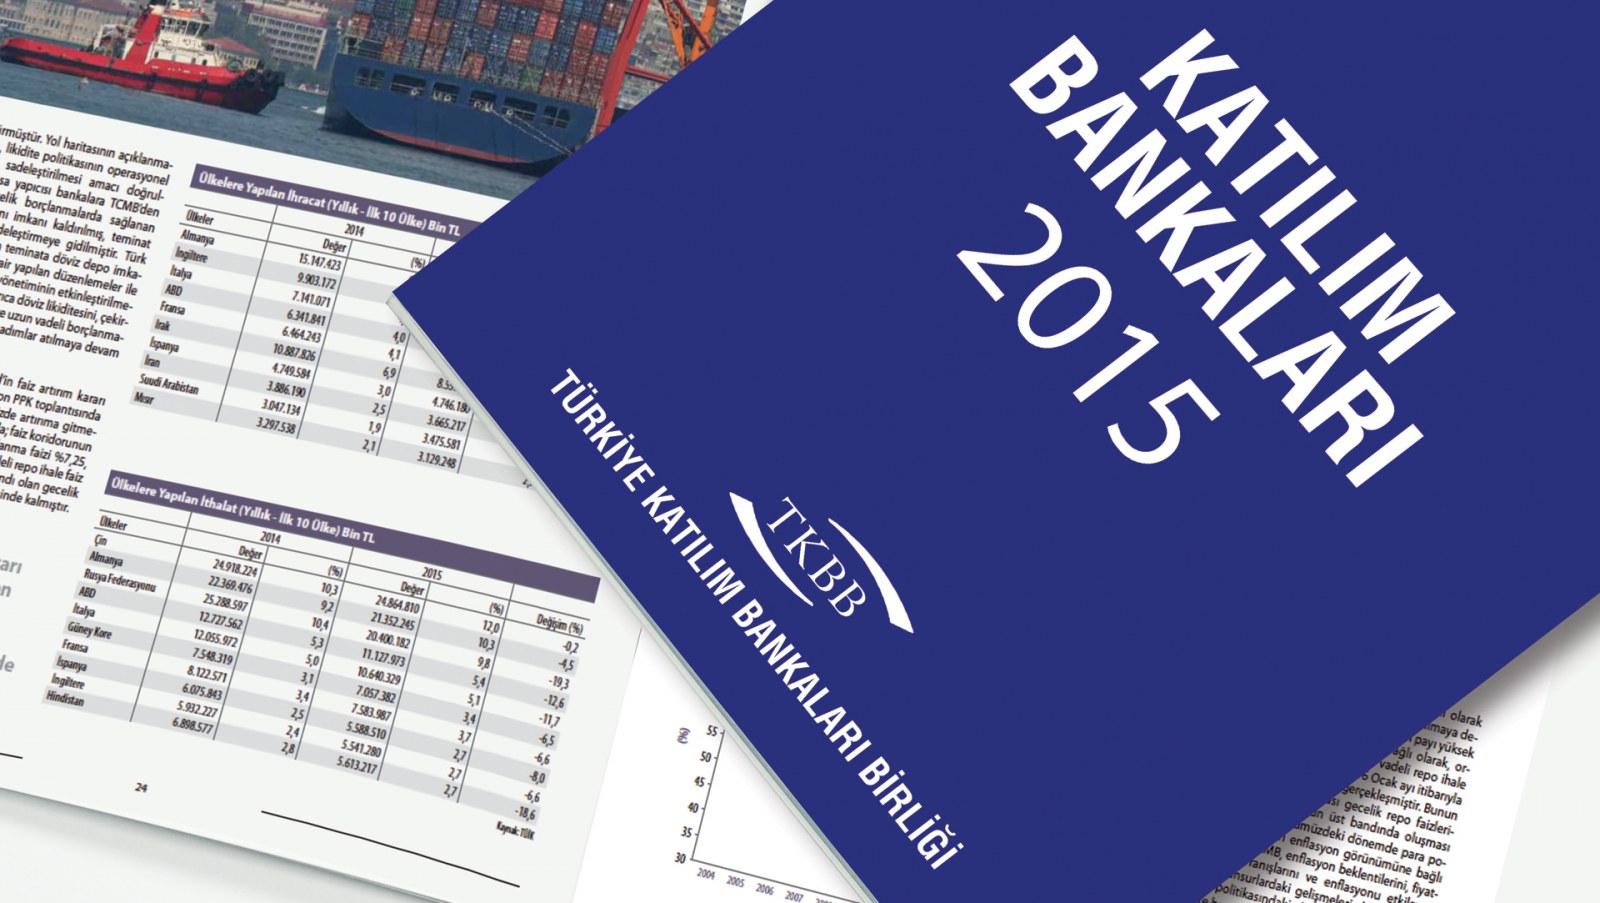 TÜRKİYE KATILIM BANKALARI BİRLİĞİ / 2015 Faaliyet Raporu / 2015 Annual Report